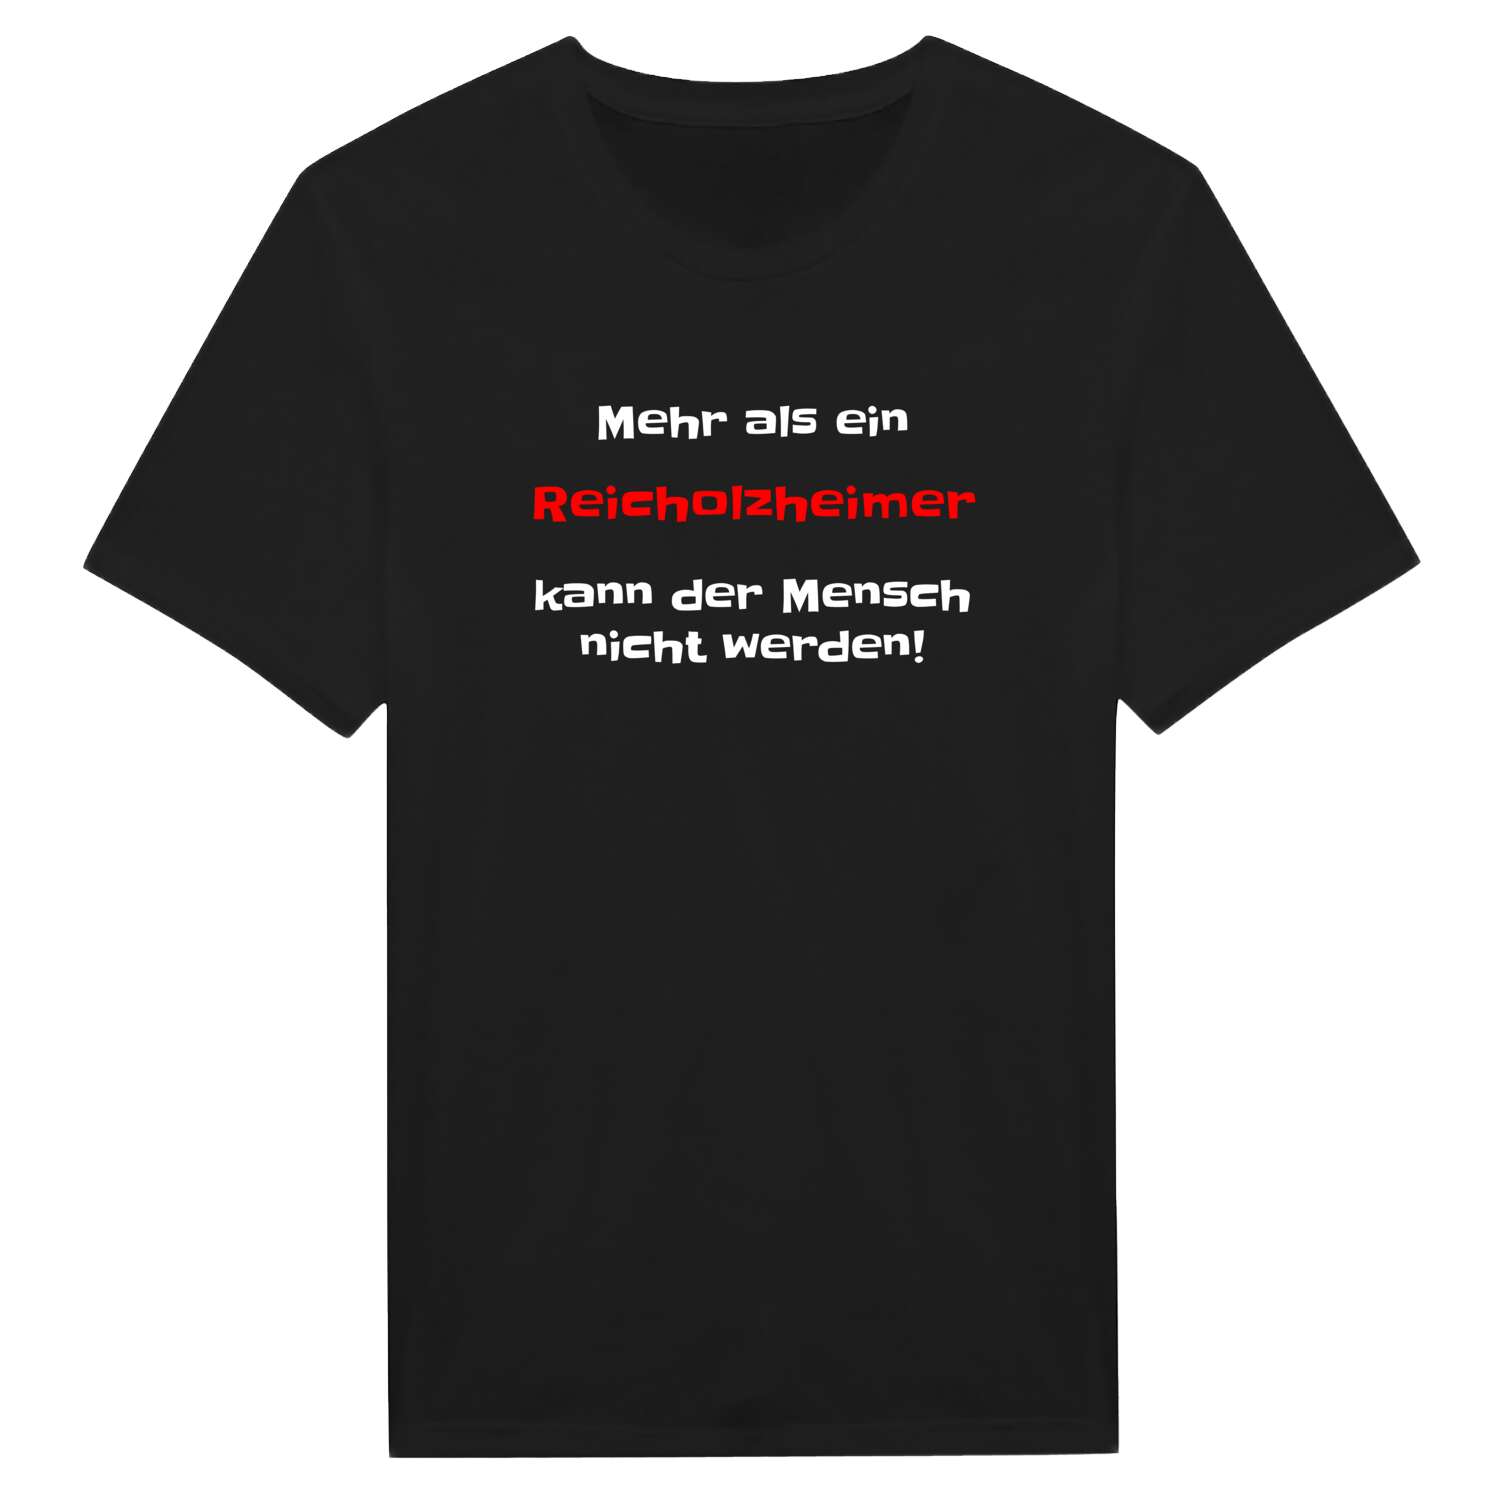 Reicholzheim T-Shirt »Mehr als ein«